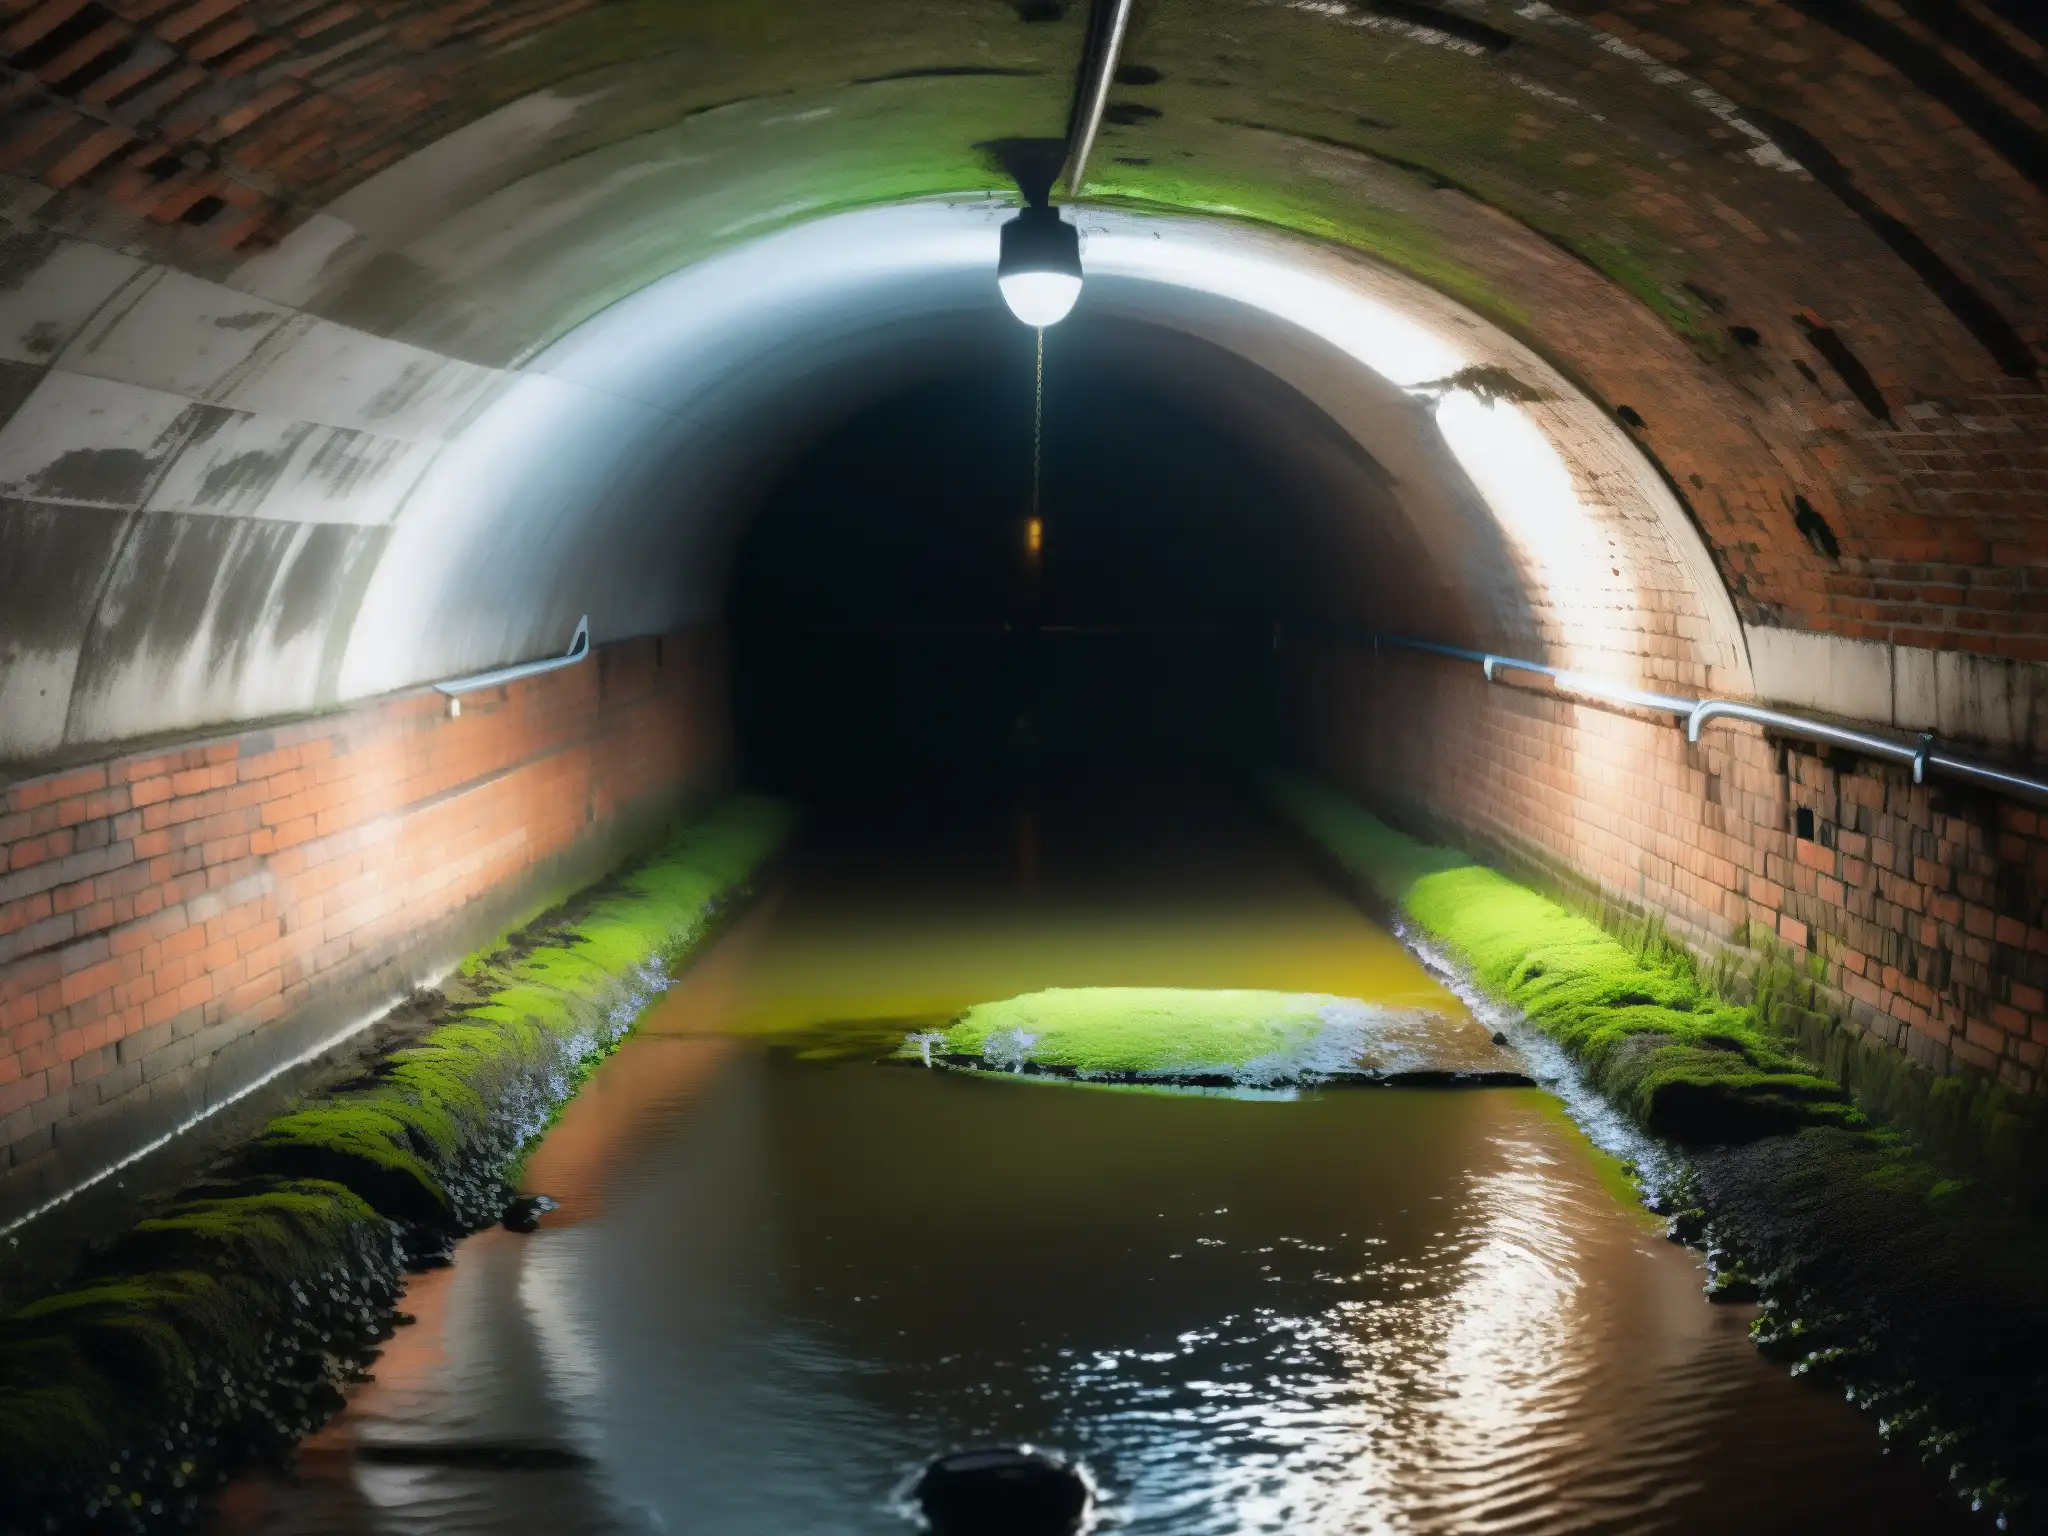 Escena enigmática de túnel subterráneo en Nueva York, evocando el mito del Alligator en el alcantarillado